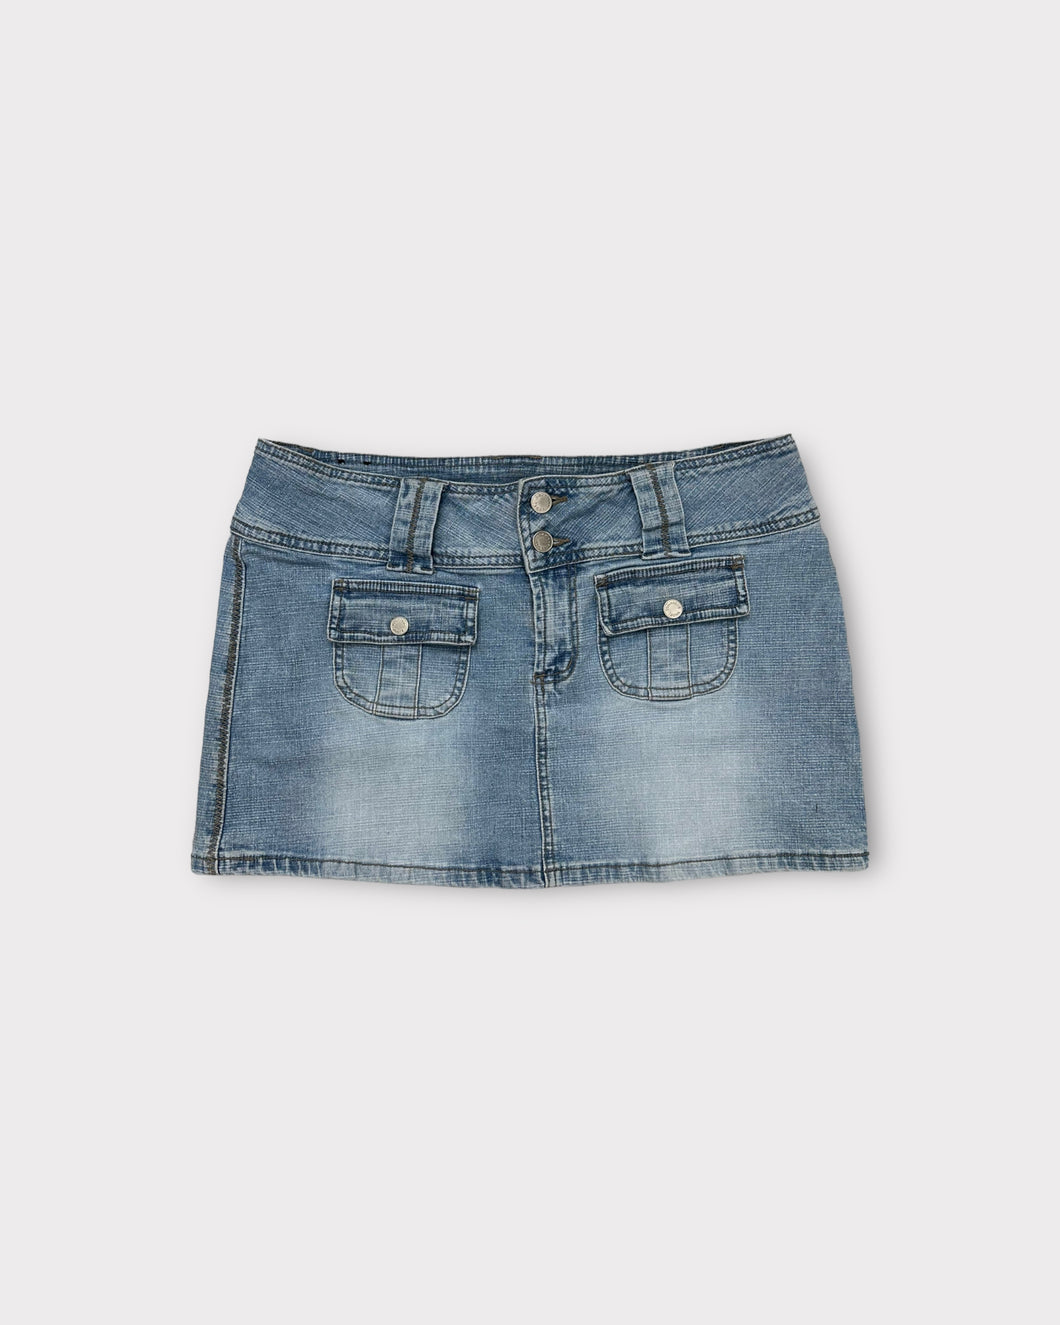 Younique Jeans Light Wash Low Rise Y2K Mini Skirt (11)